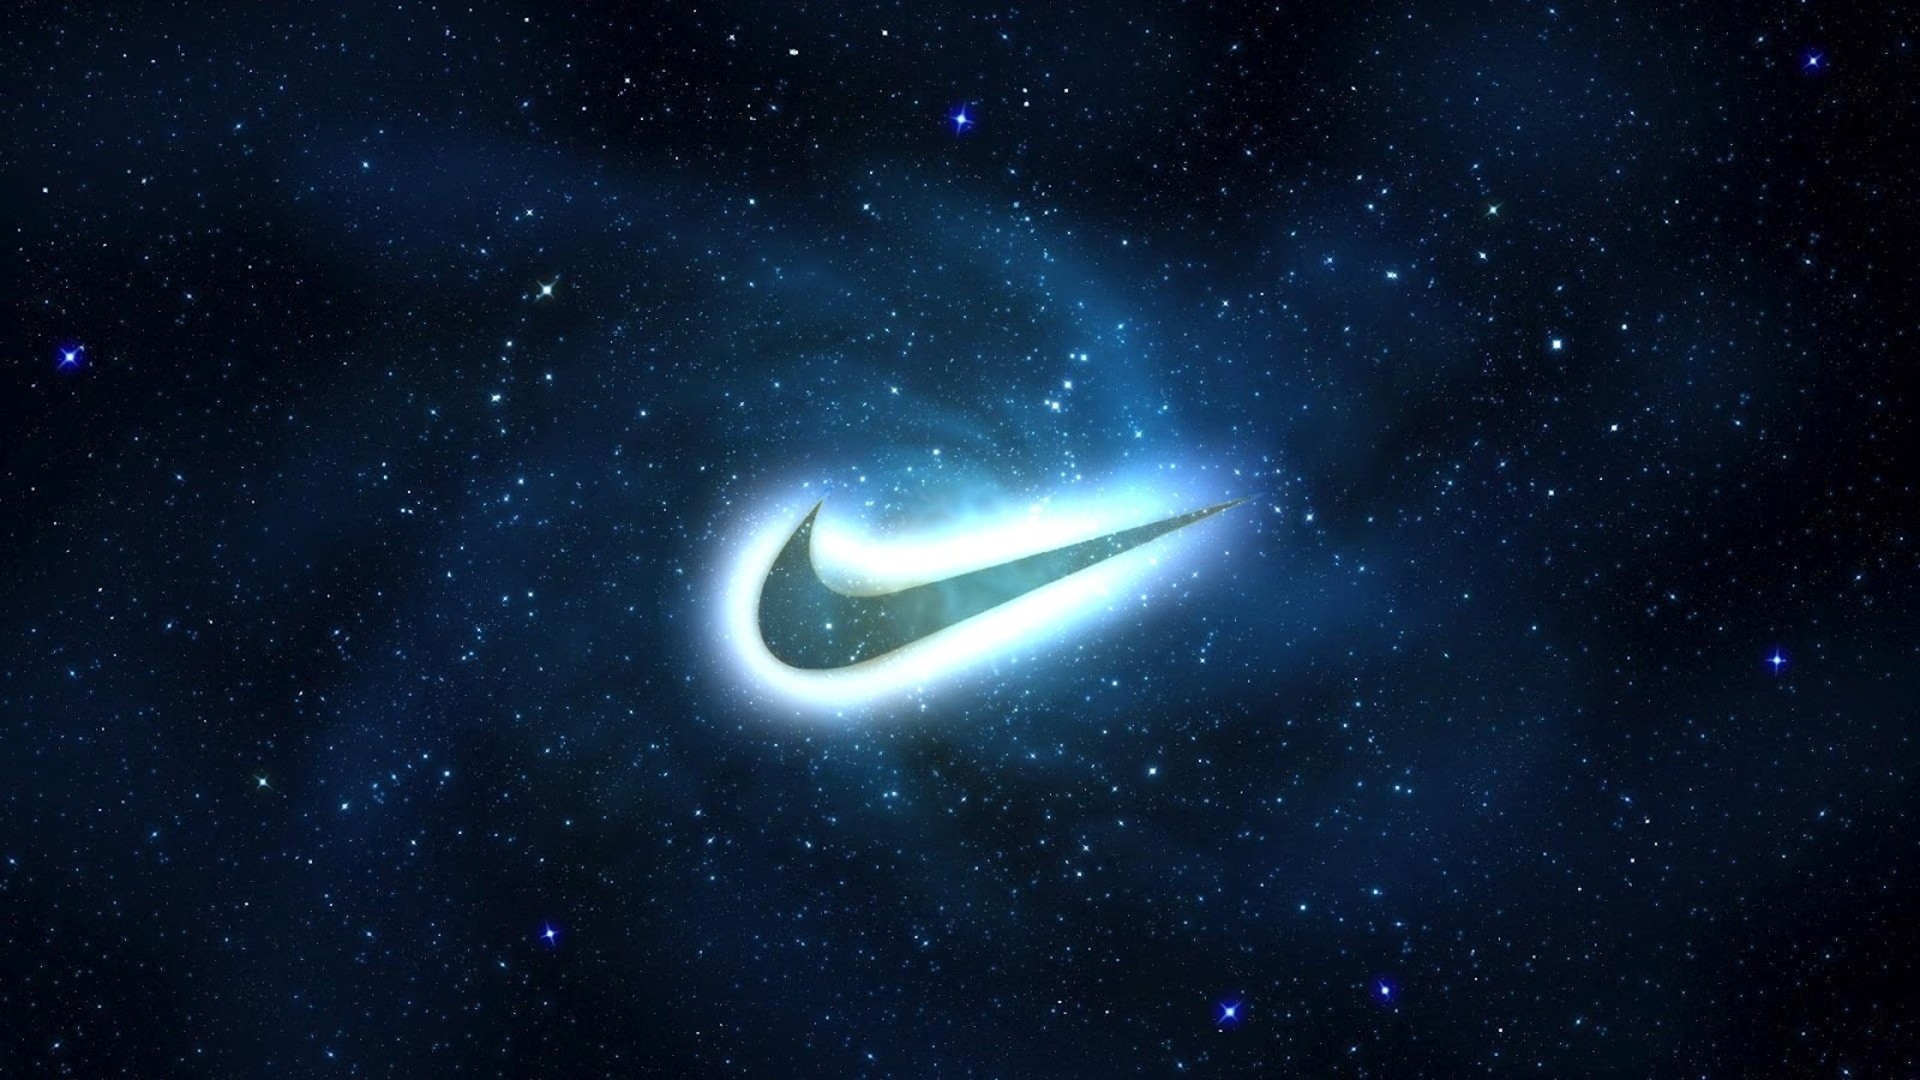 New Nike Wallpaper Risewlp